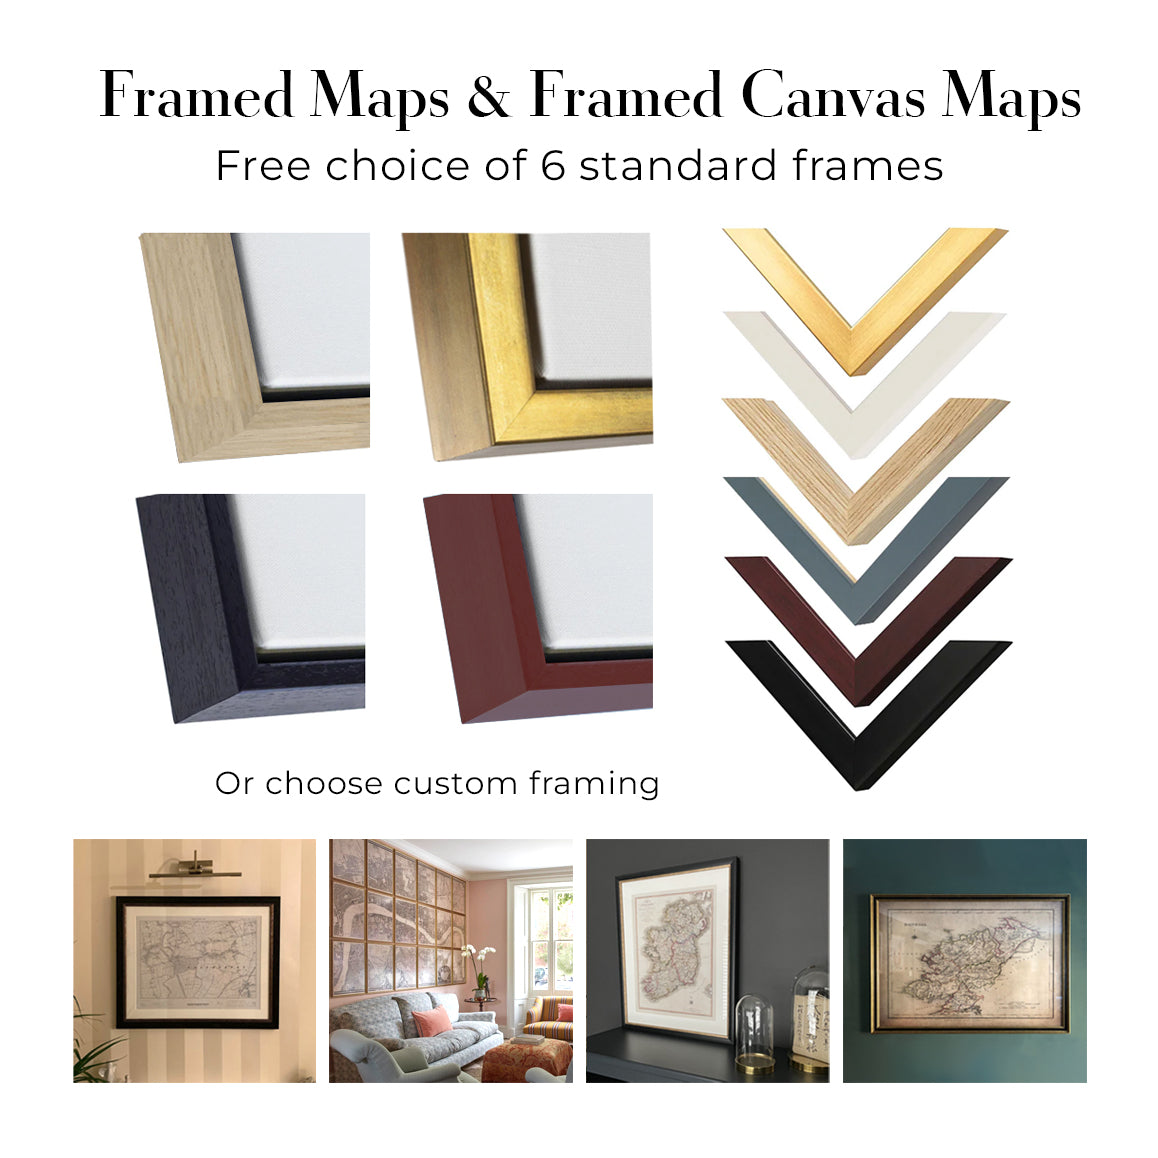 Image showing standard framed map, standard framed canvas and custom framing finishes